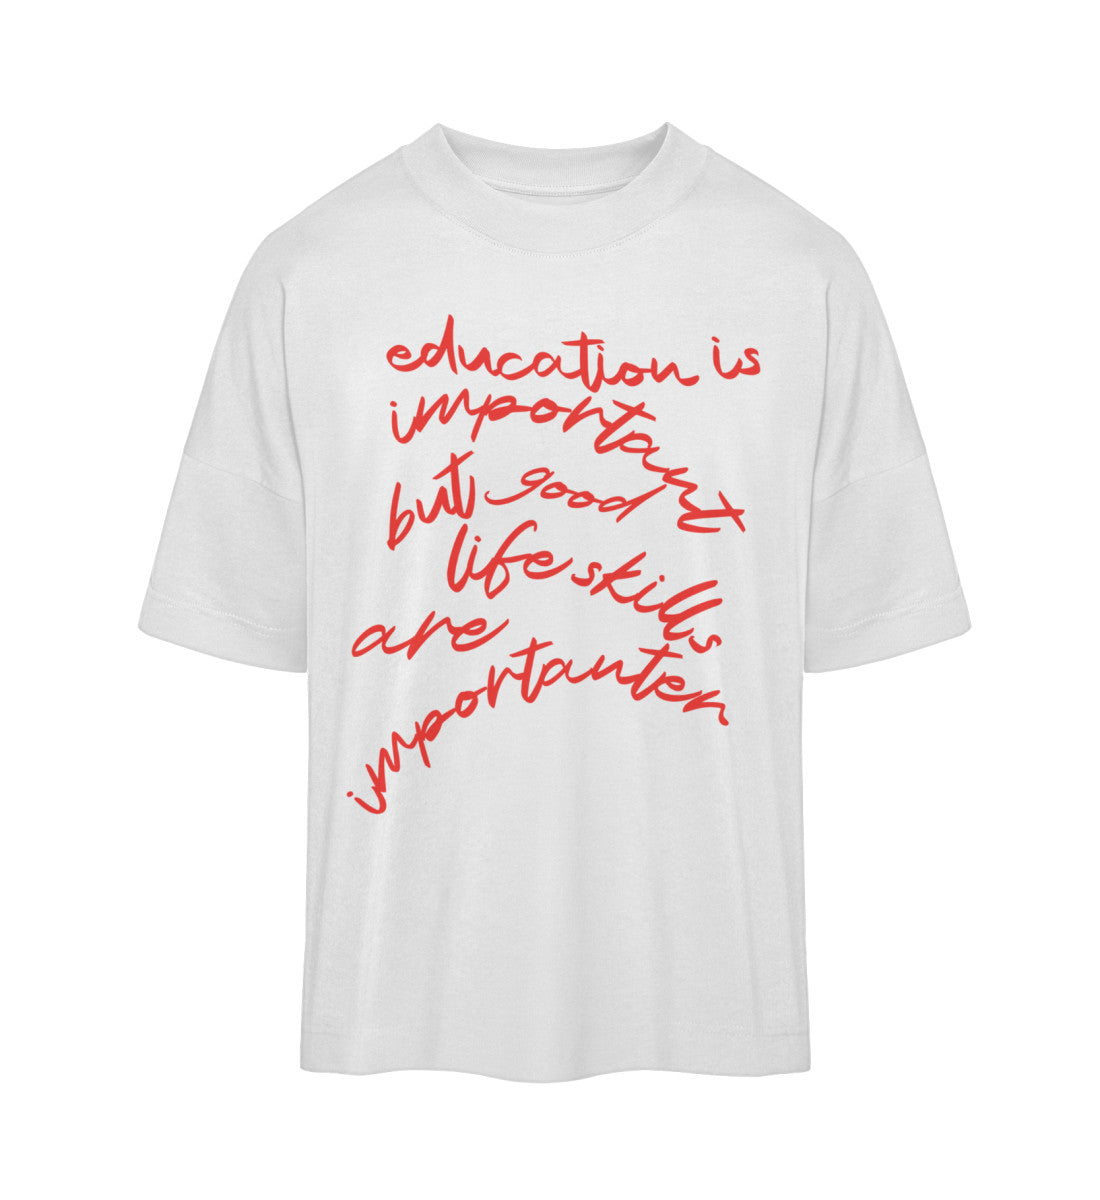 Weißes T-Shirt im Unisex Oversize Fit für Frauen und Männer bedruckt mit dem Design der Roger Rockawoo Kollektion education versus life skills